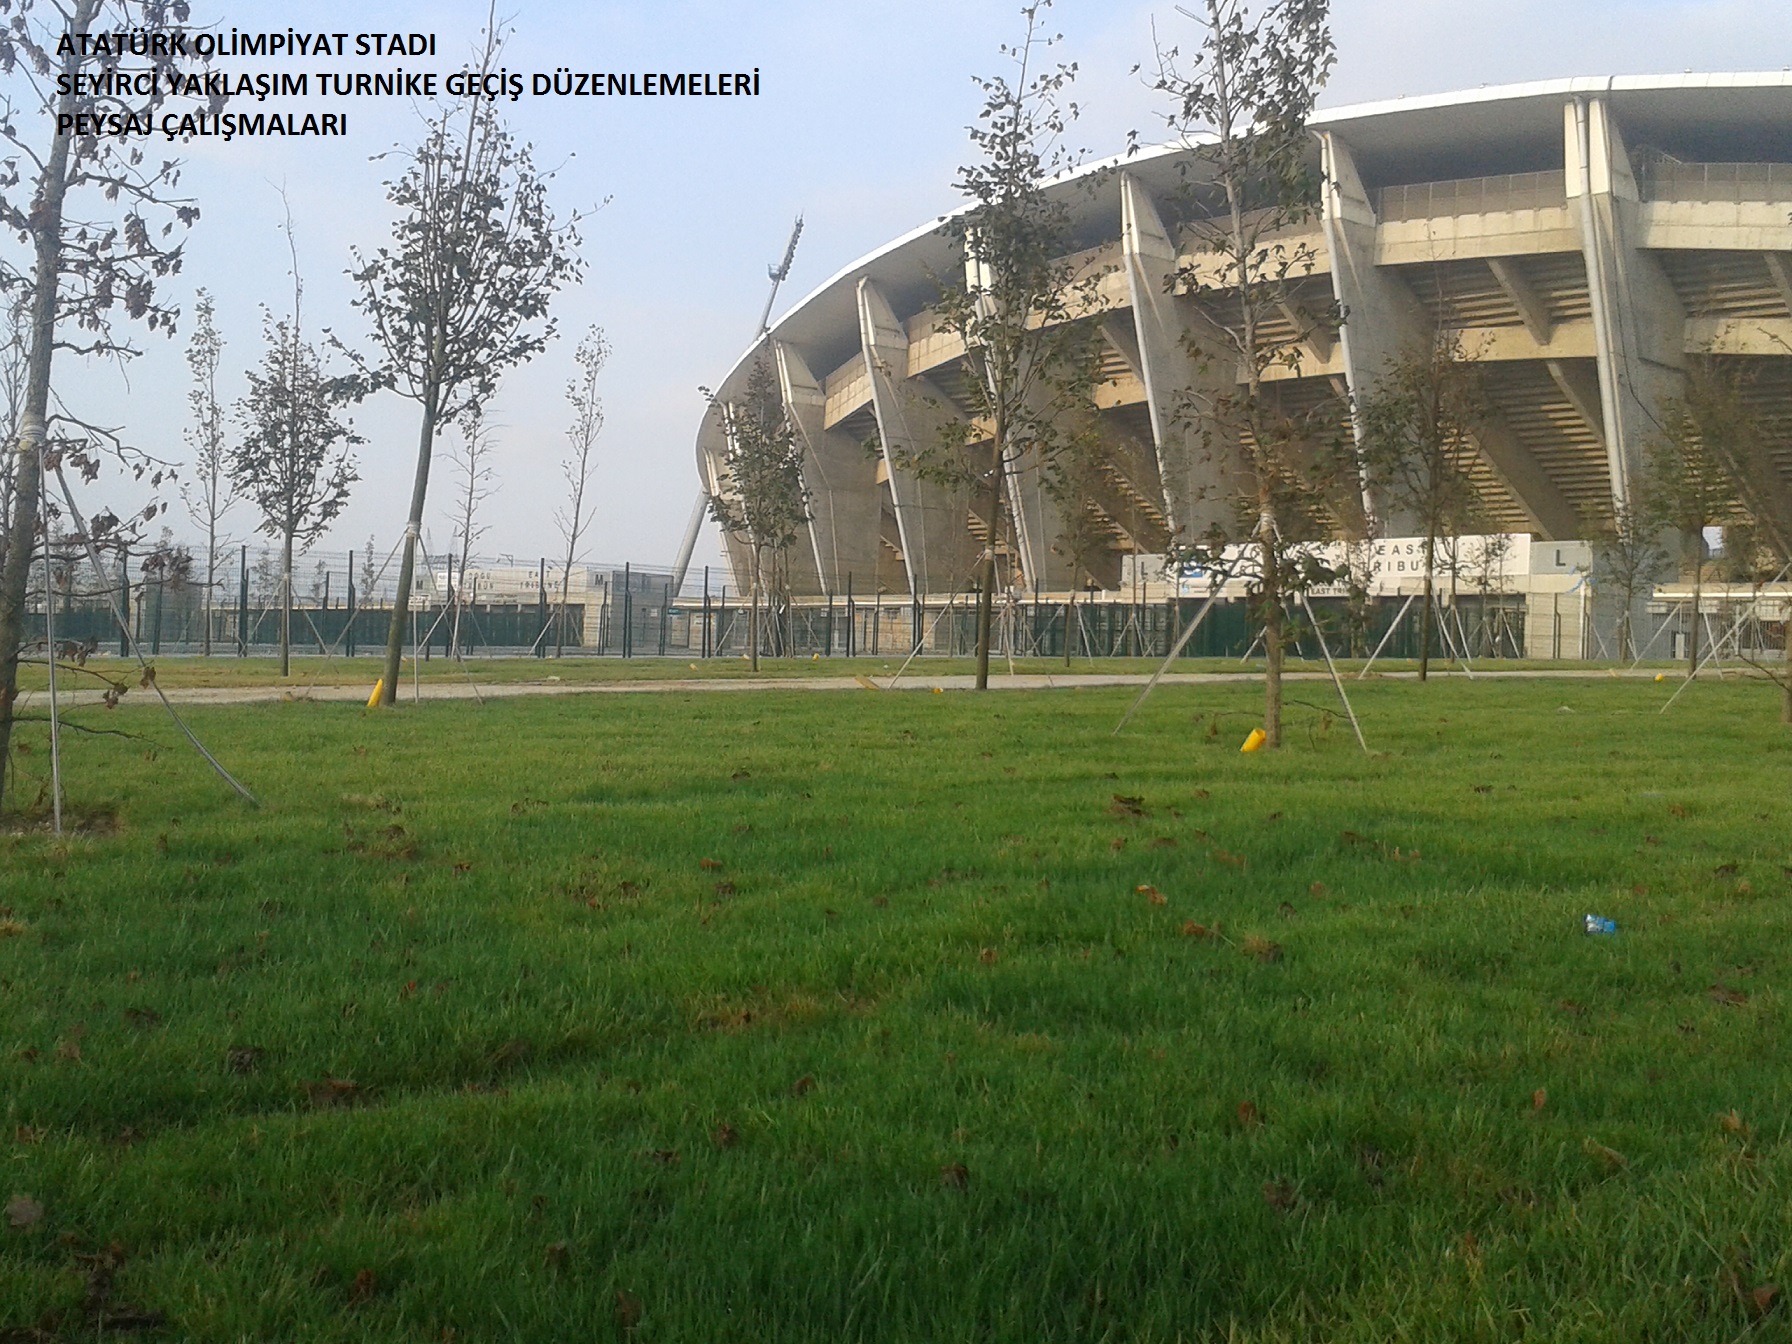 Atatürk Olimpiyat Stadı Engelli Seyirci Otopark, Giriş ve Tribünleri